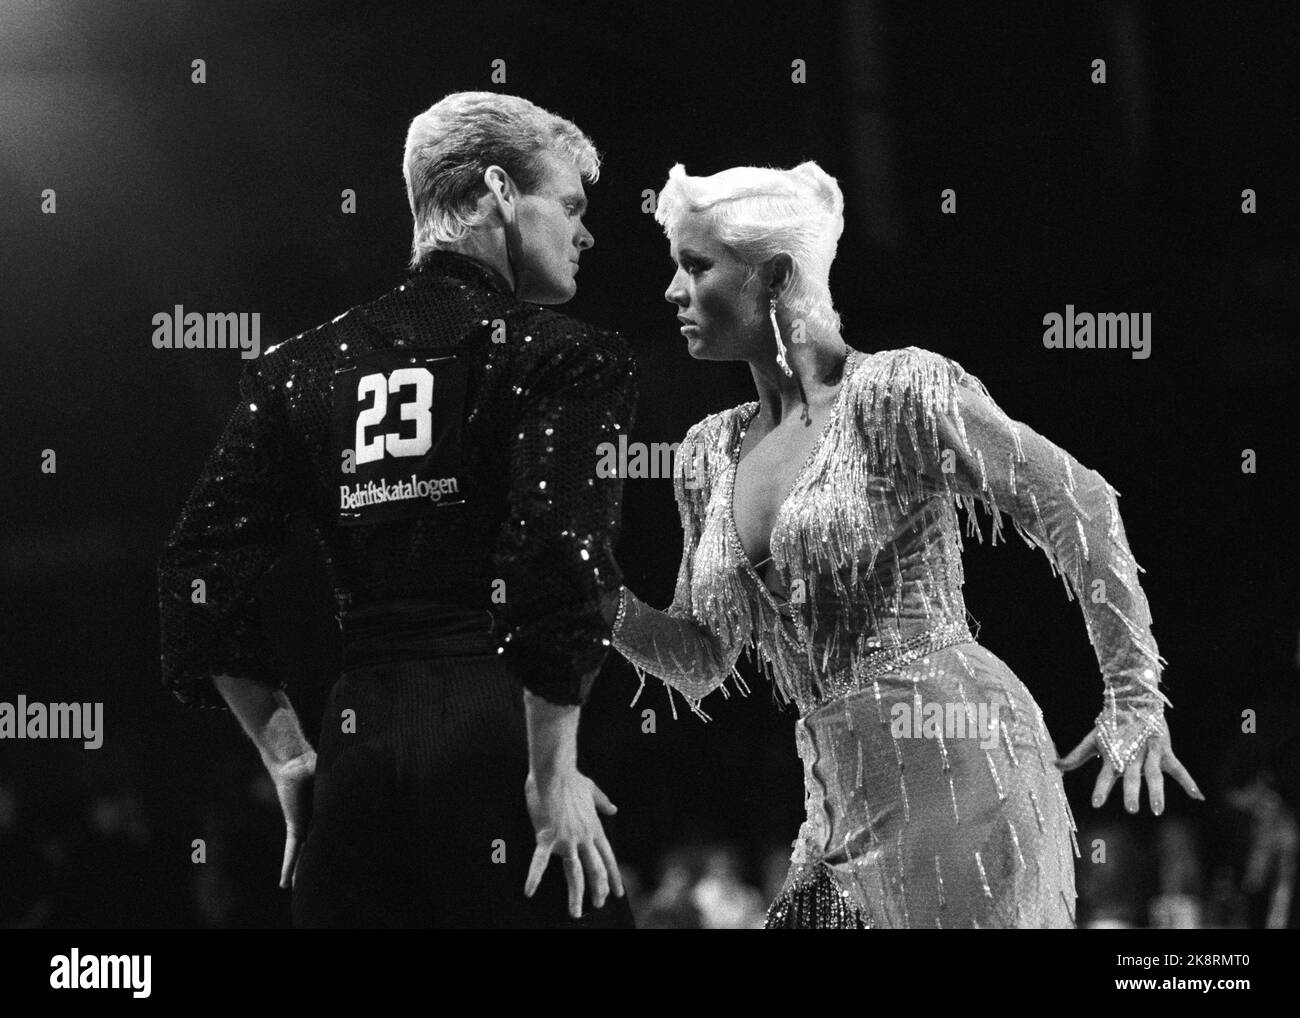 19 mars 1988 d'Oslo. Ekeberghallen. Coupe du monde de danse. Voici le couple norvégien Tone Nyhagen et Knut Sæborg qui a remporté le titre de coupe du monde en danses latino-américaines. Photo: Eystein Hanssen / NTB / NTB Banque D'Images